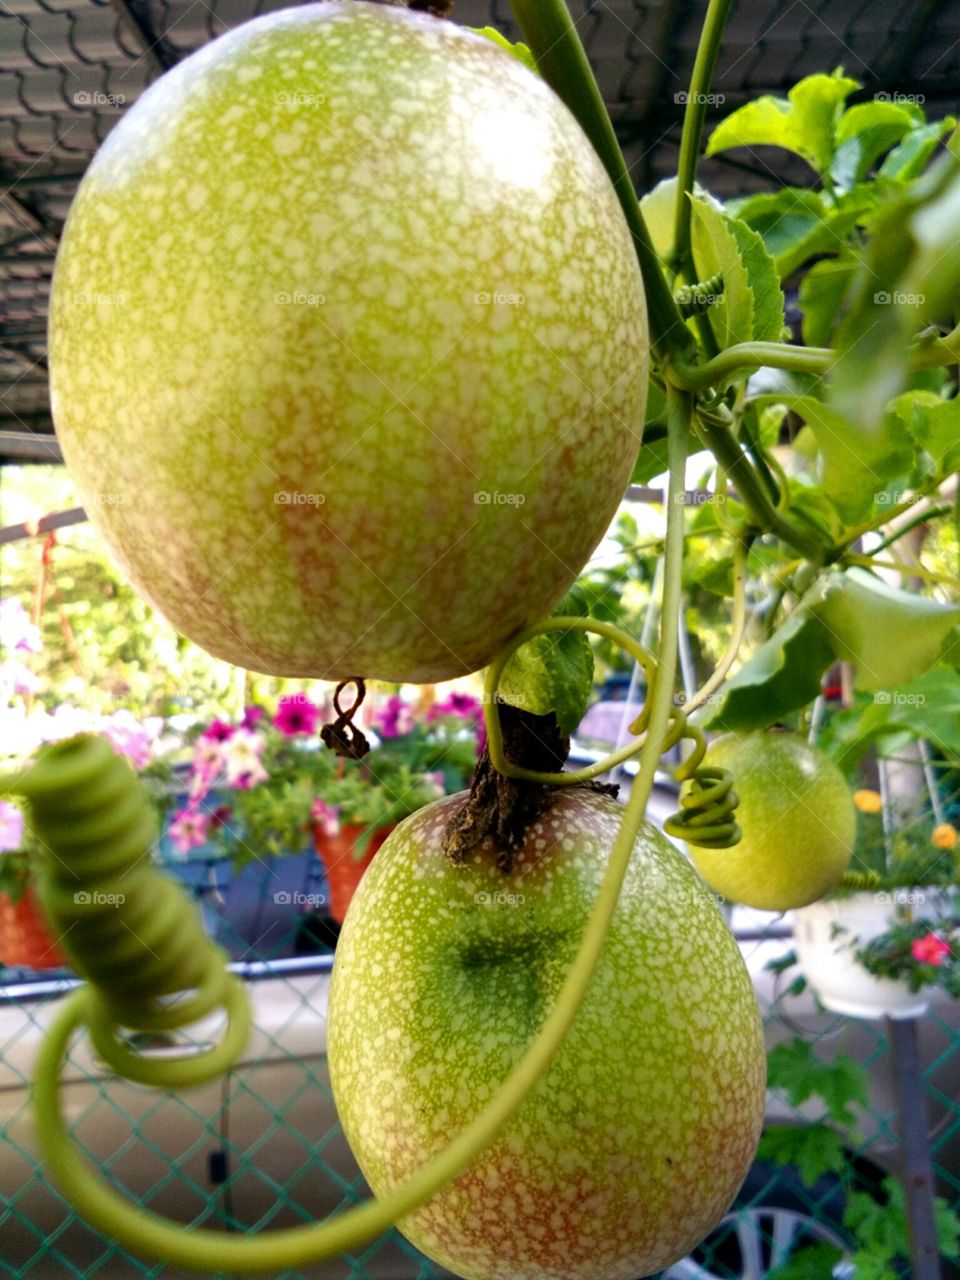 passionfruit